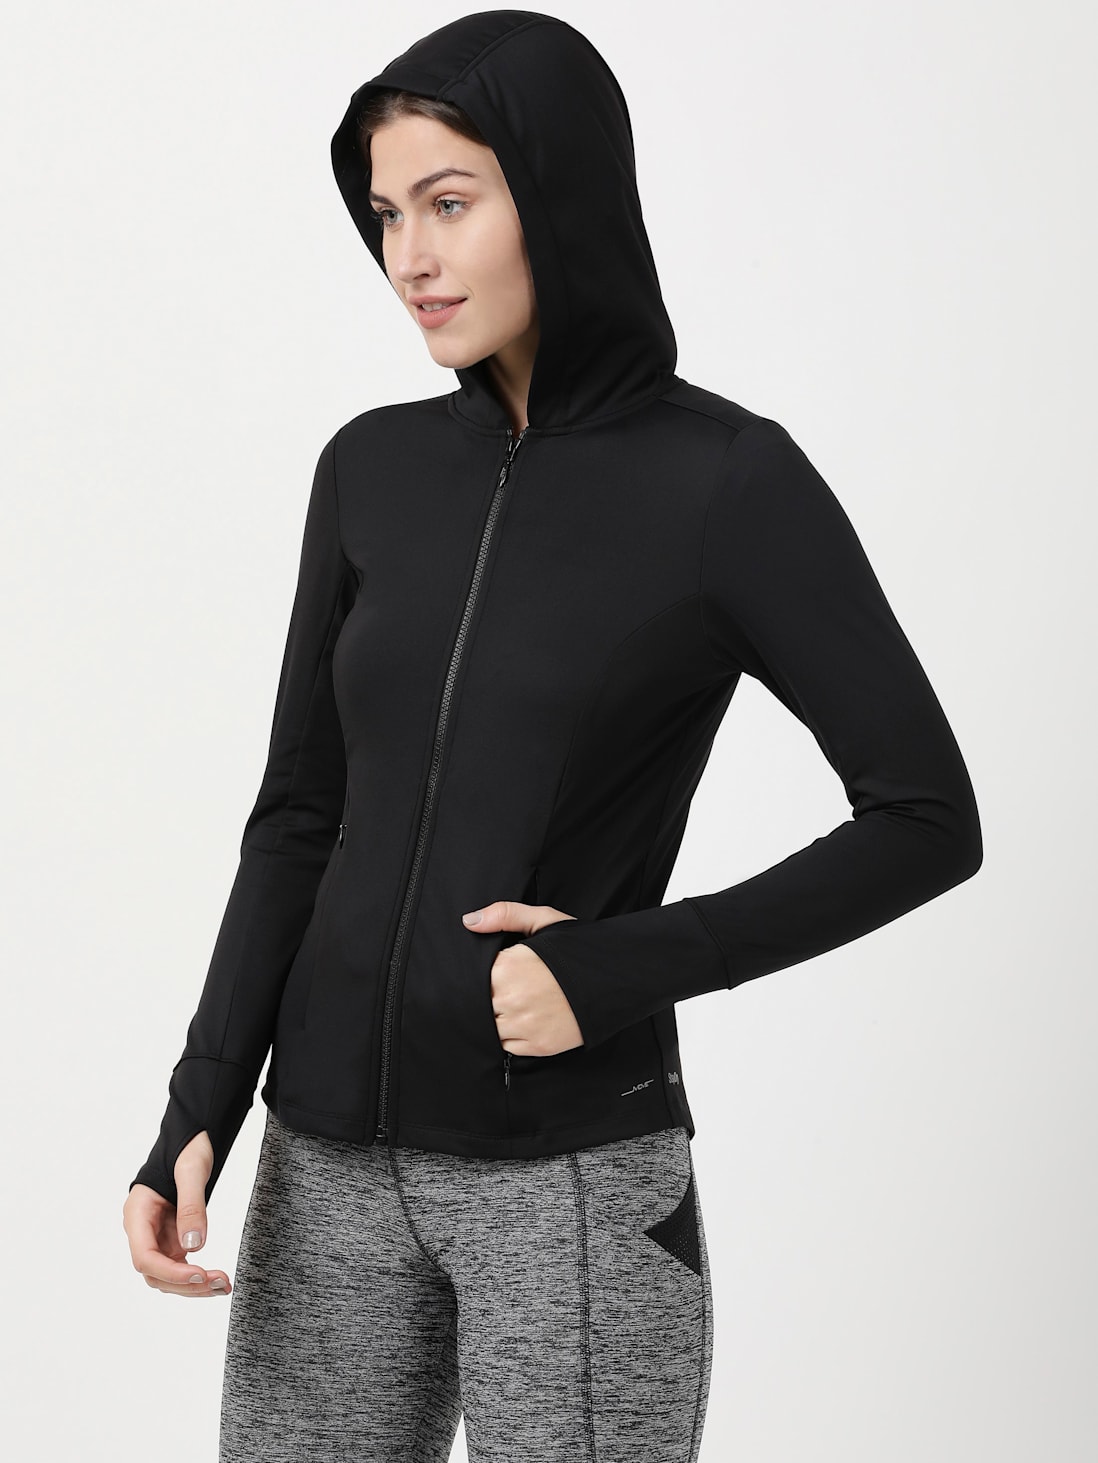 Buy Women's Microfiber Elastane Stretch Slim Fit Hoodie Jacket with ...